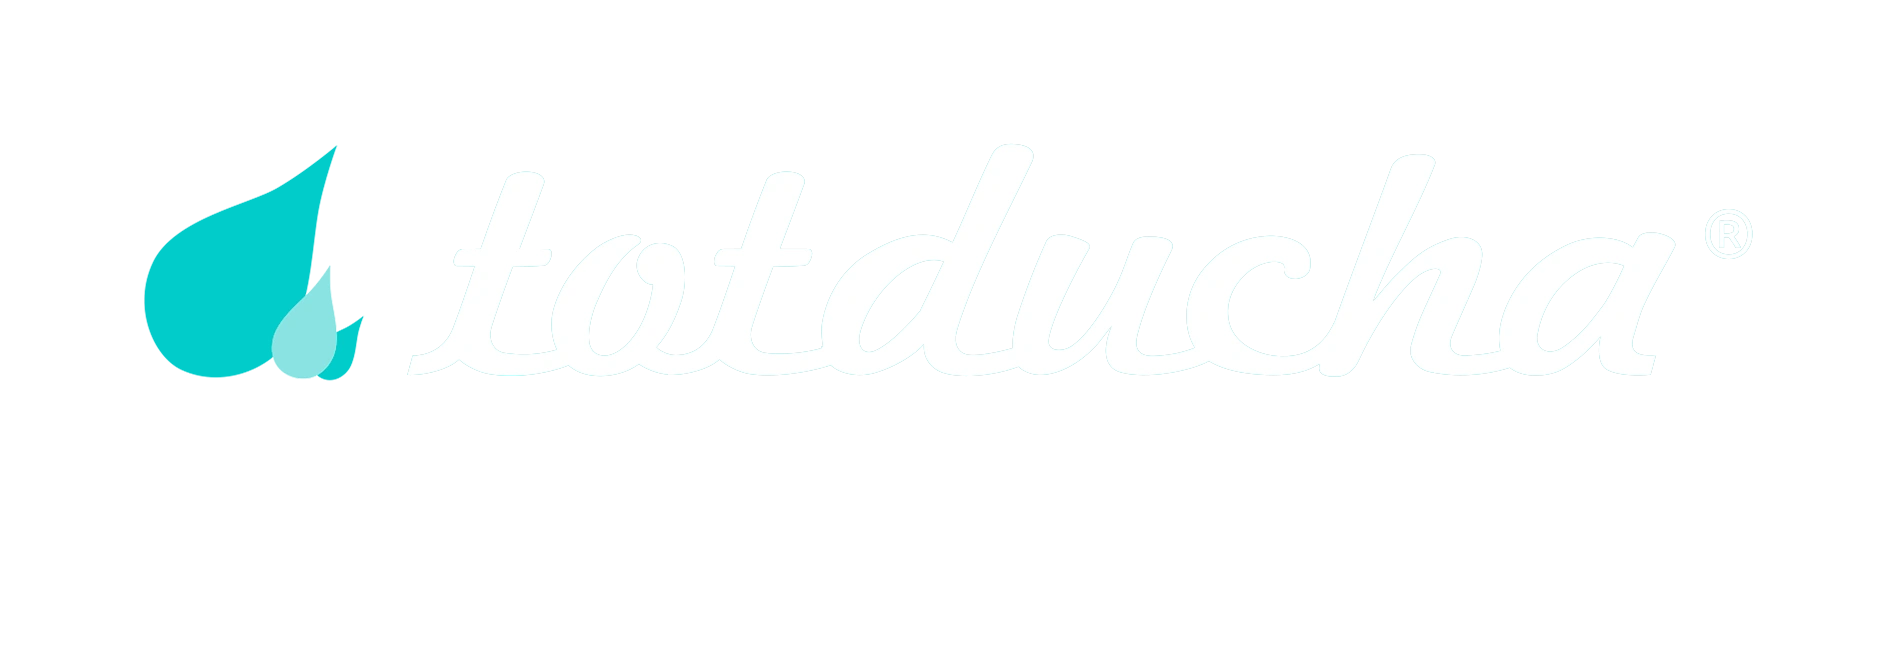 Logo de Totducha en blanco y en azul